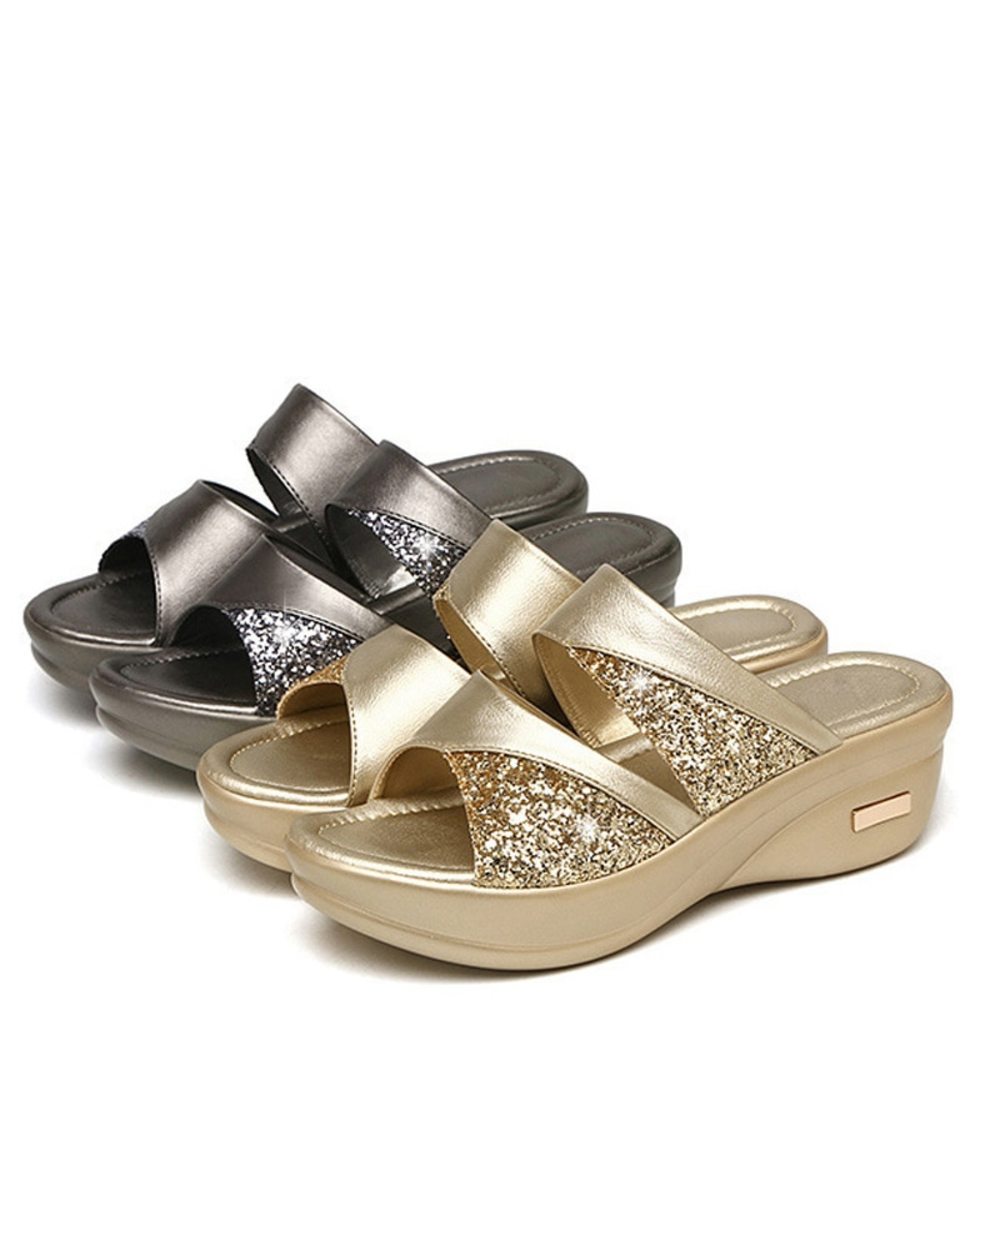 Higolot™ New Summer Glitter PU Wedge Platform Comfortable Sandals For Women